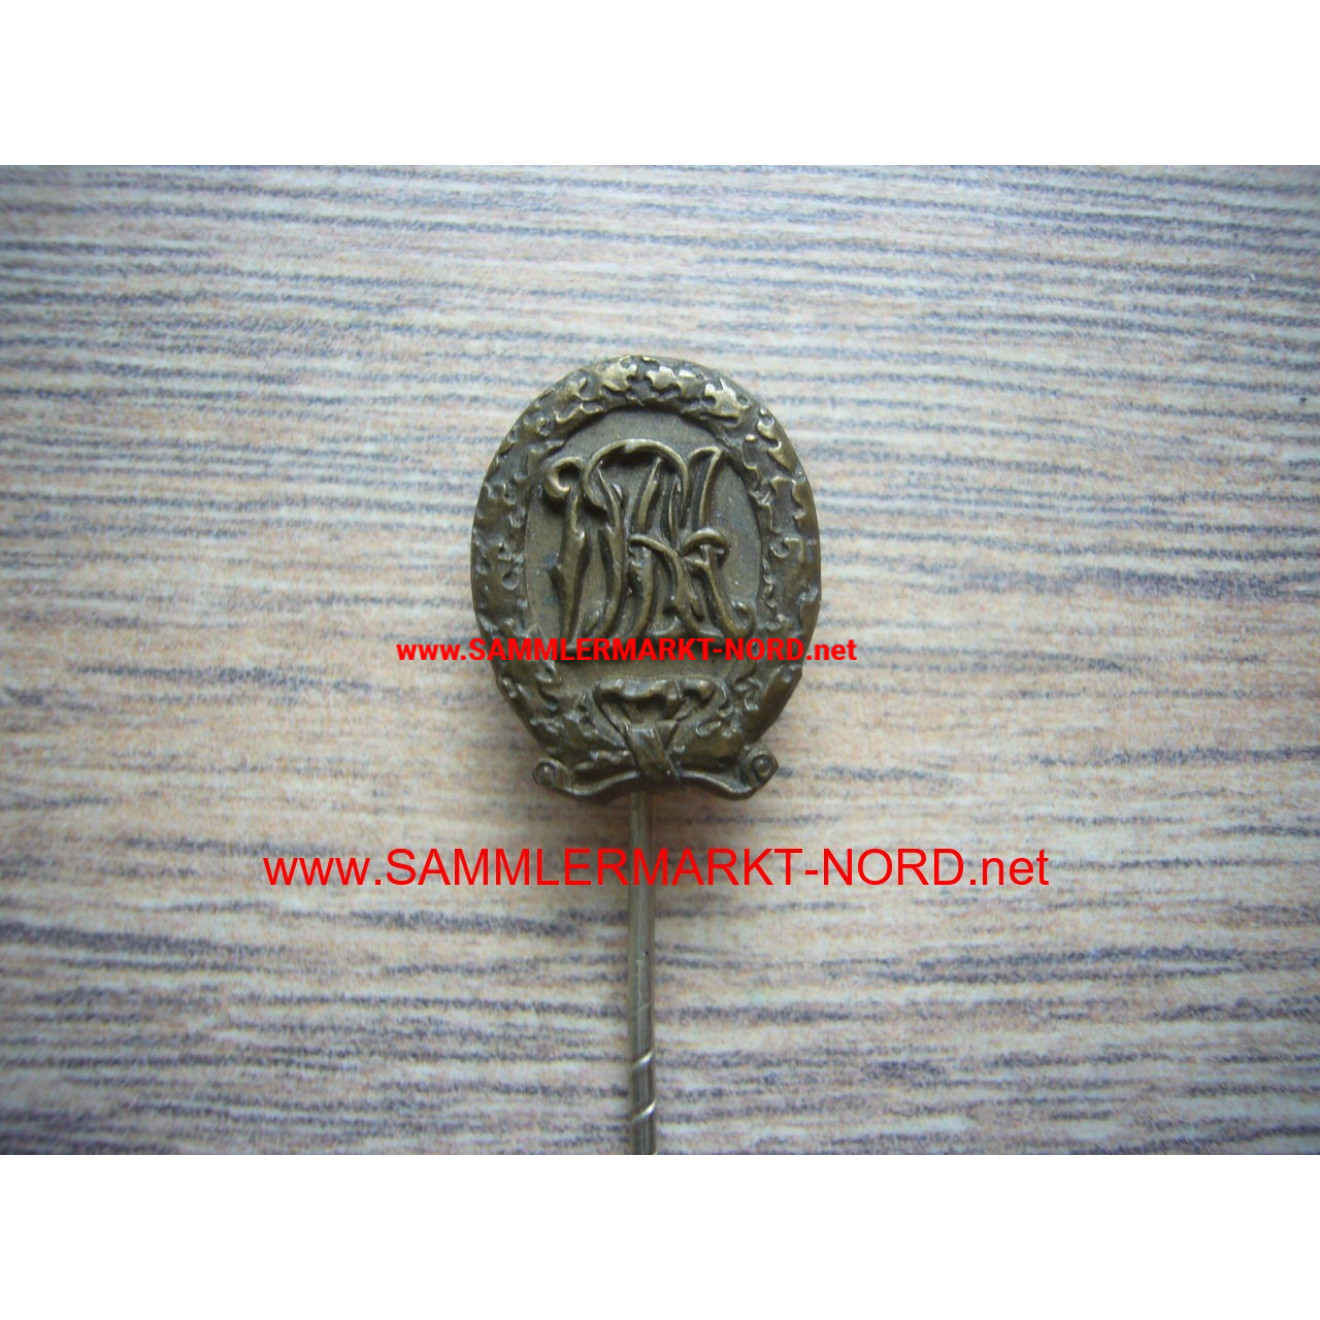 DRA Sportabzeichen in Bronze - Miniatur